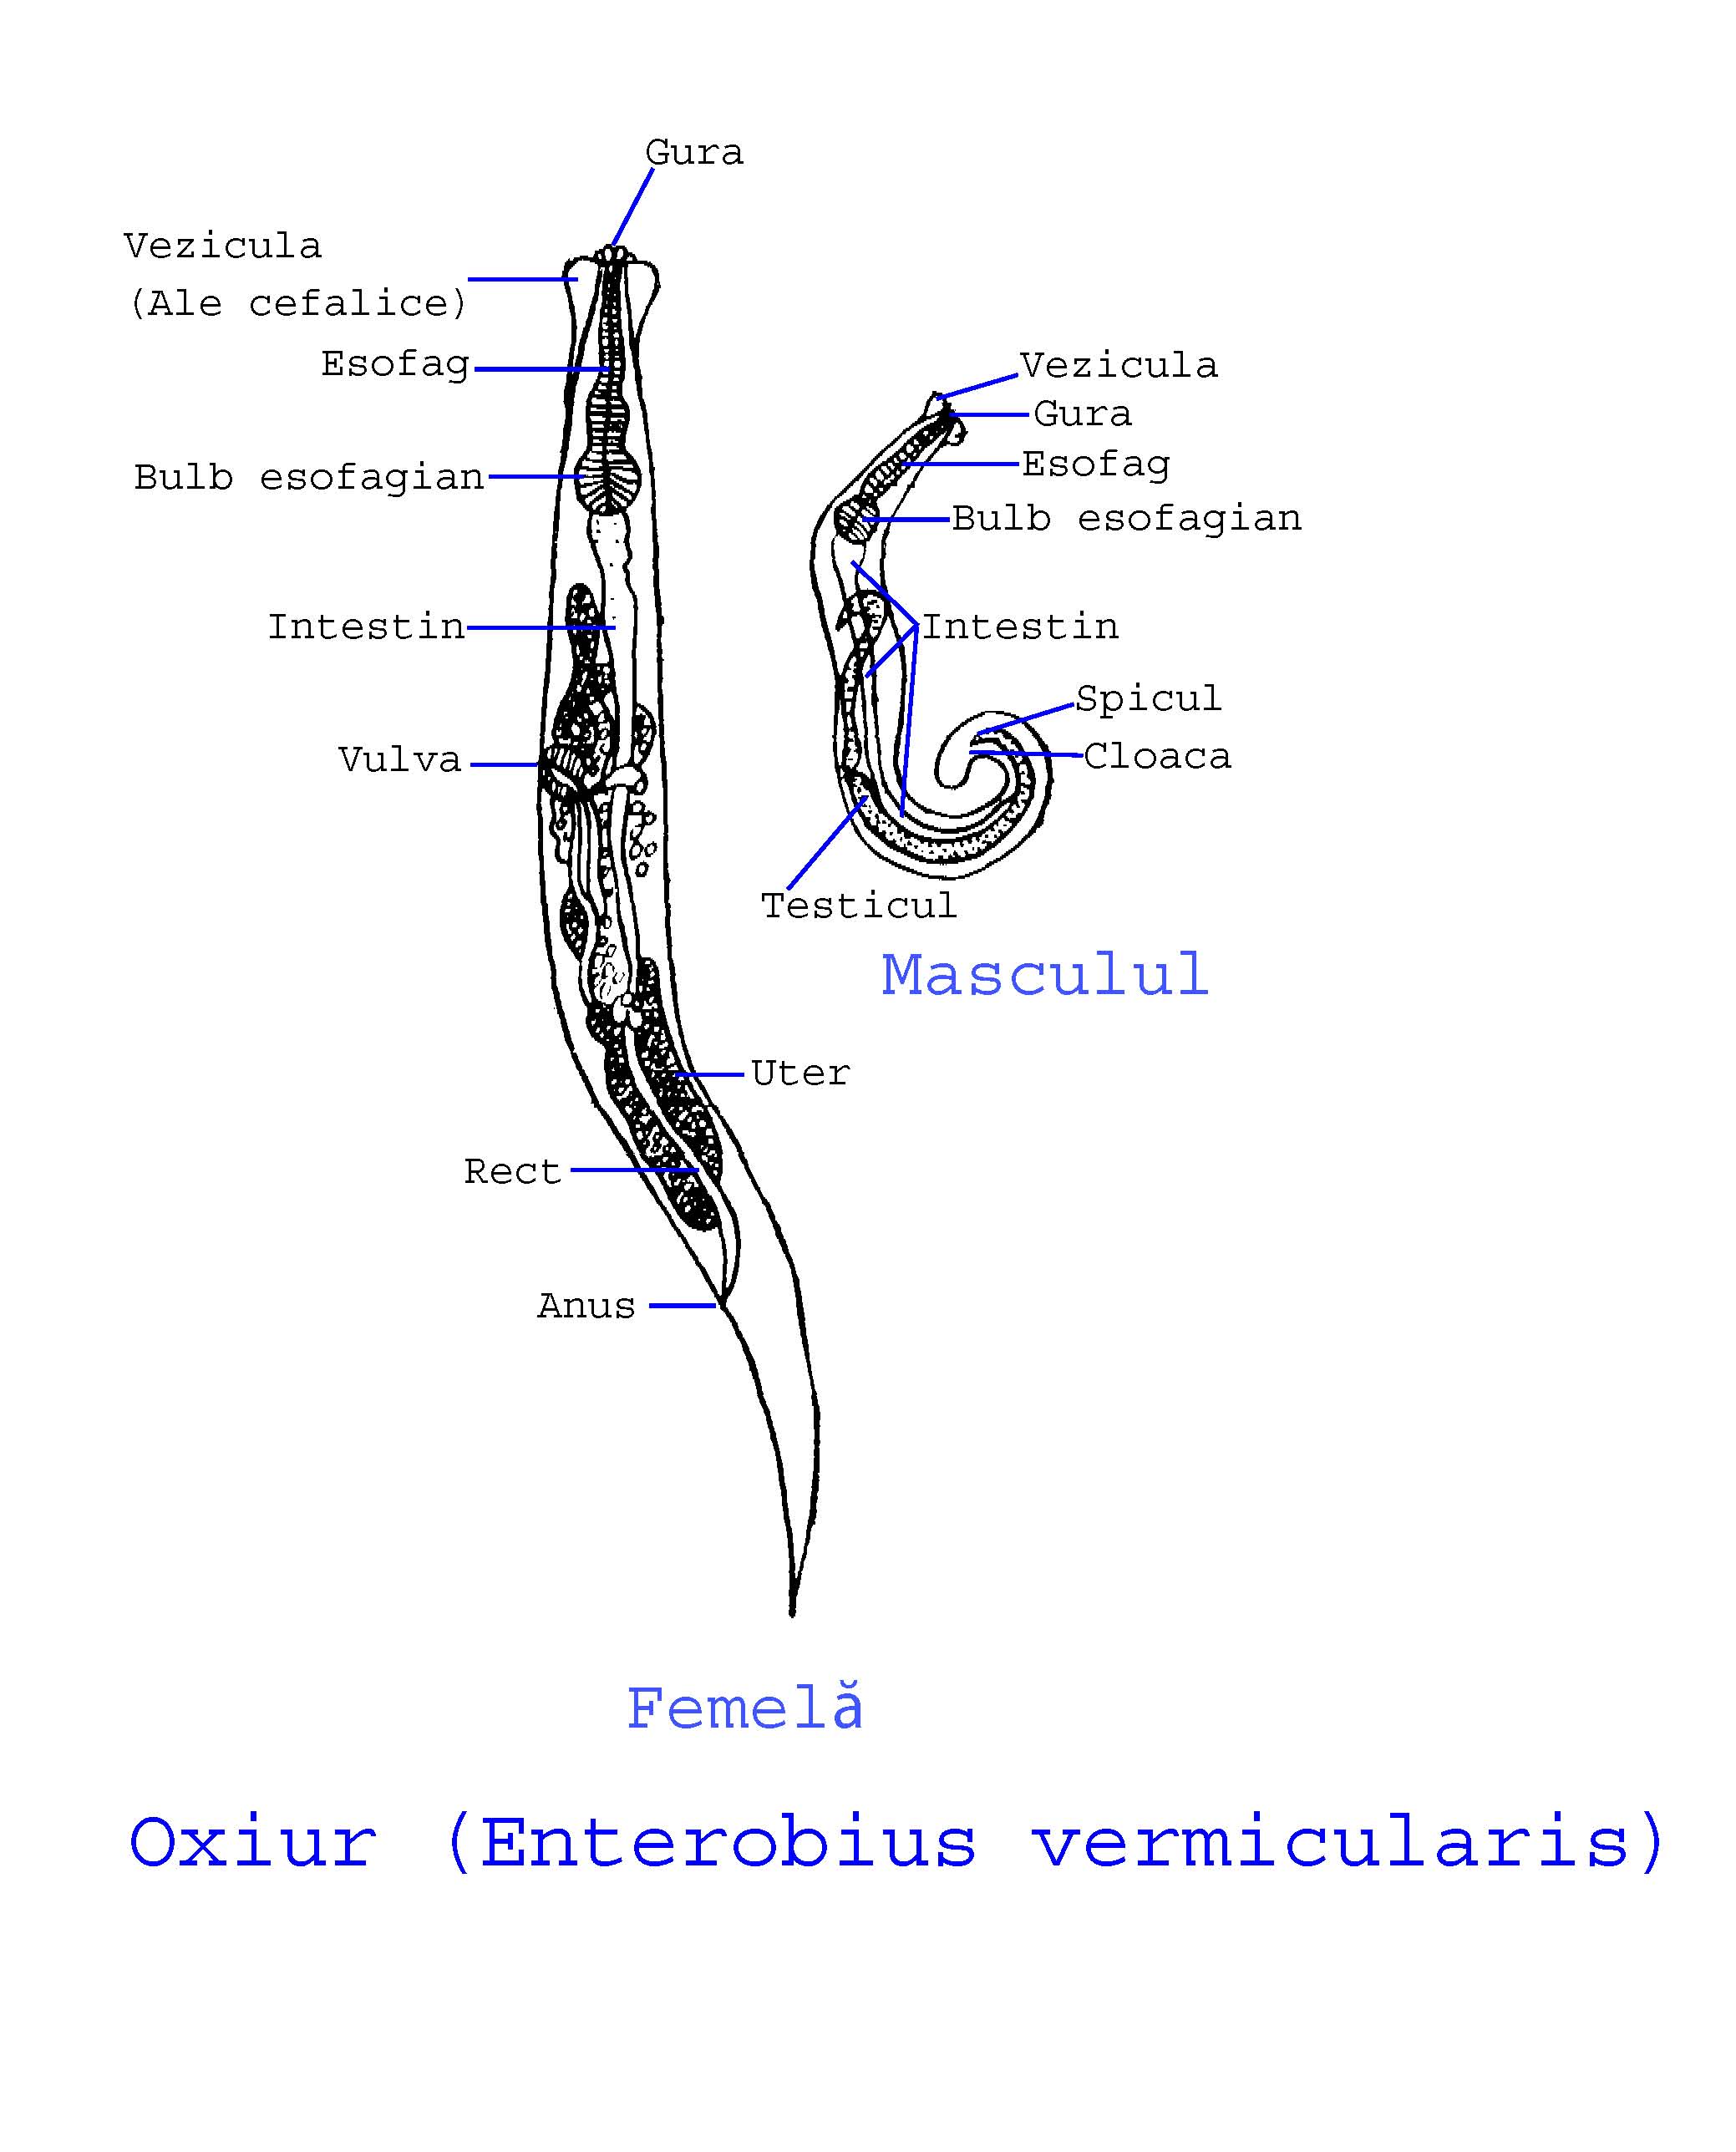 oxiuriasis of enterobiasis)